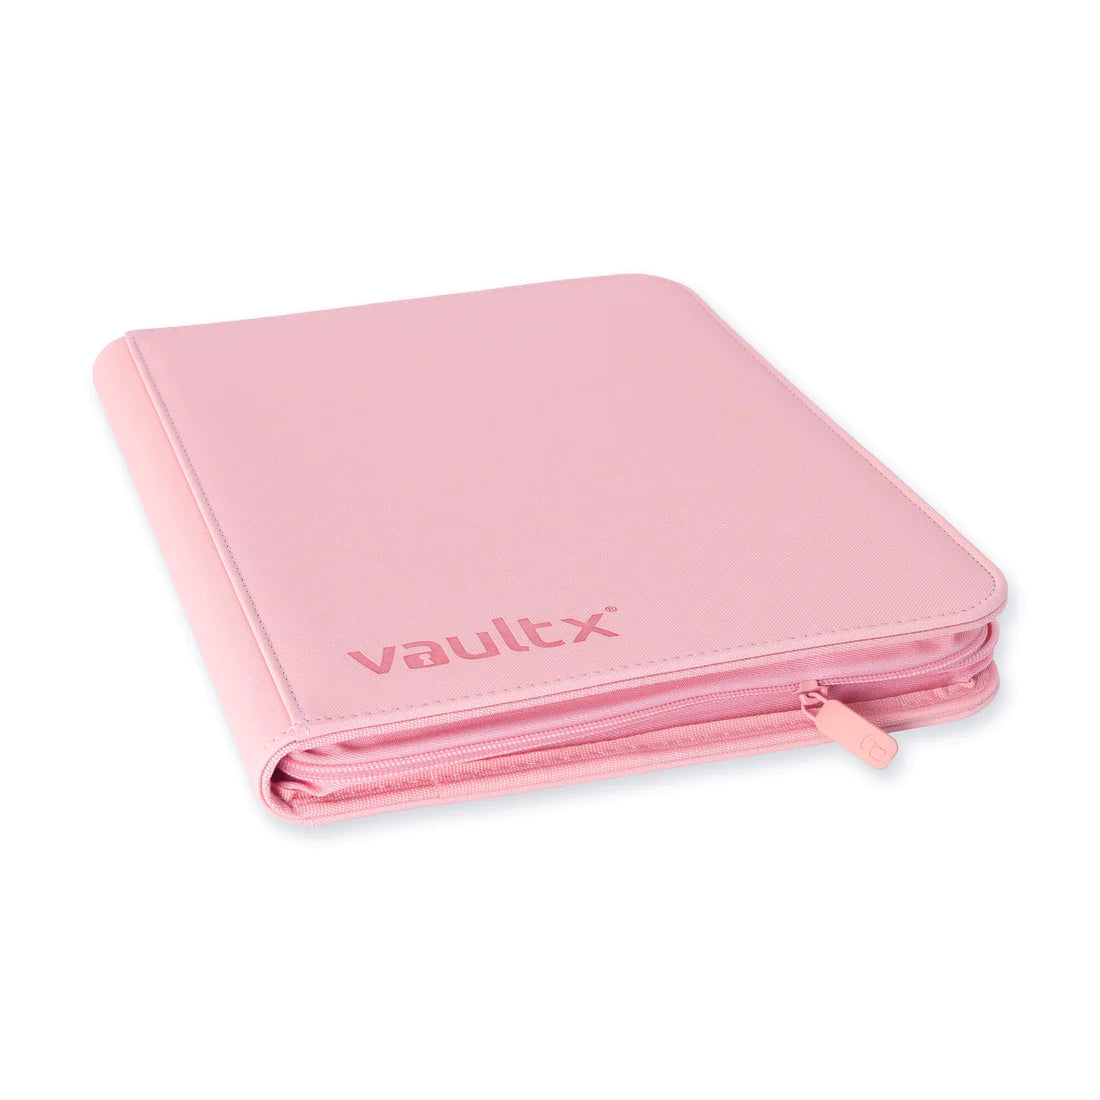 Vaultx - Just Pink Zip Binder